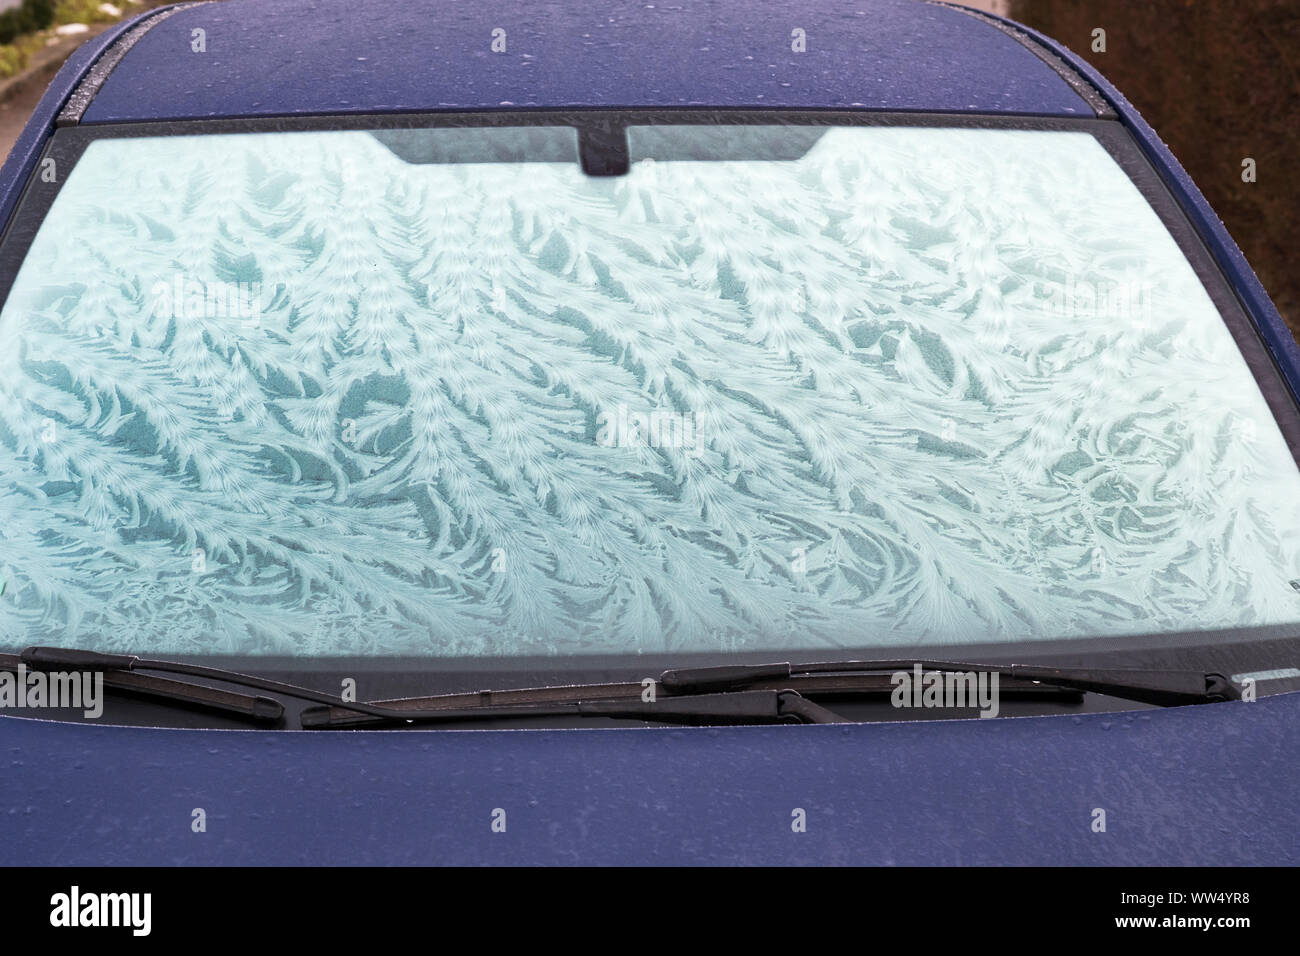 Fleurs de givre sur les pare-brise, vitre de voiture, Allemagne